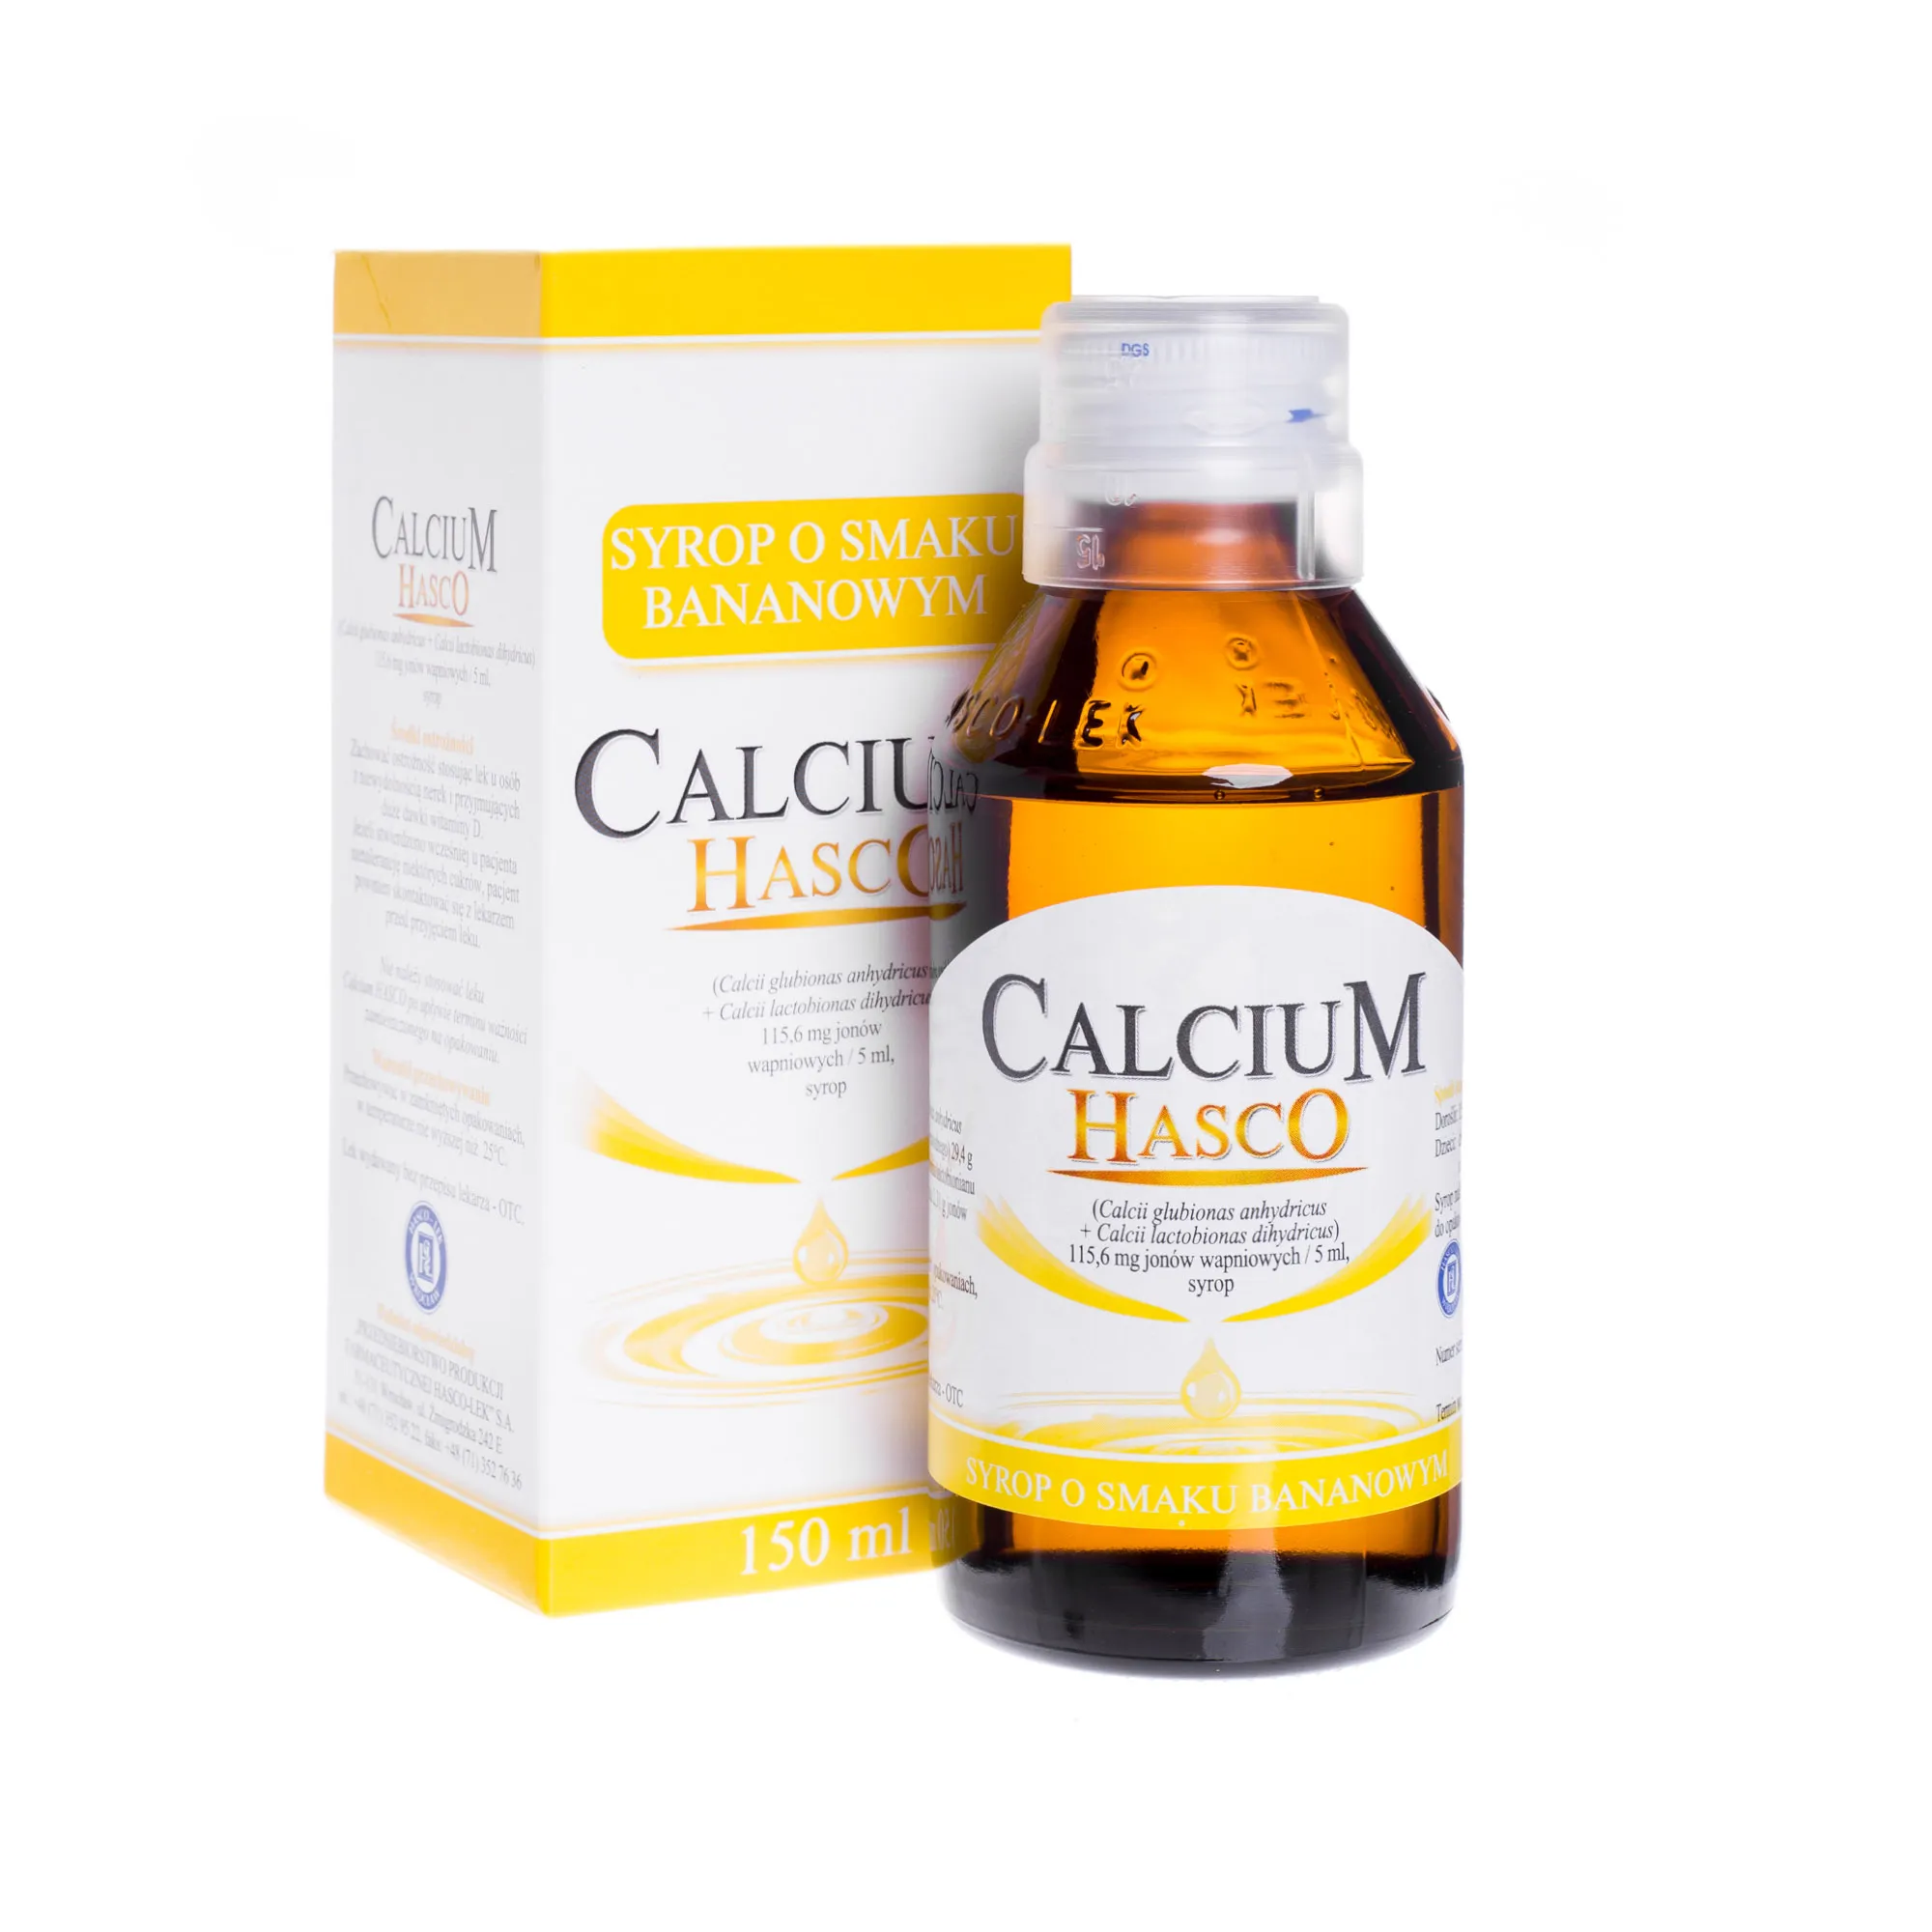 Calcium Hasco 115,6 mg jonów wapnia/ 5 ml, syrop o smaku bananowym, 150 ml